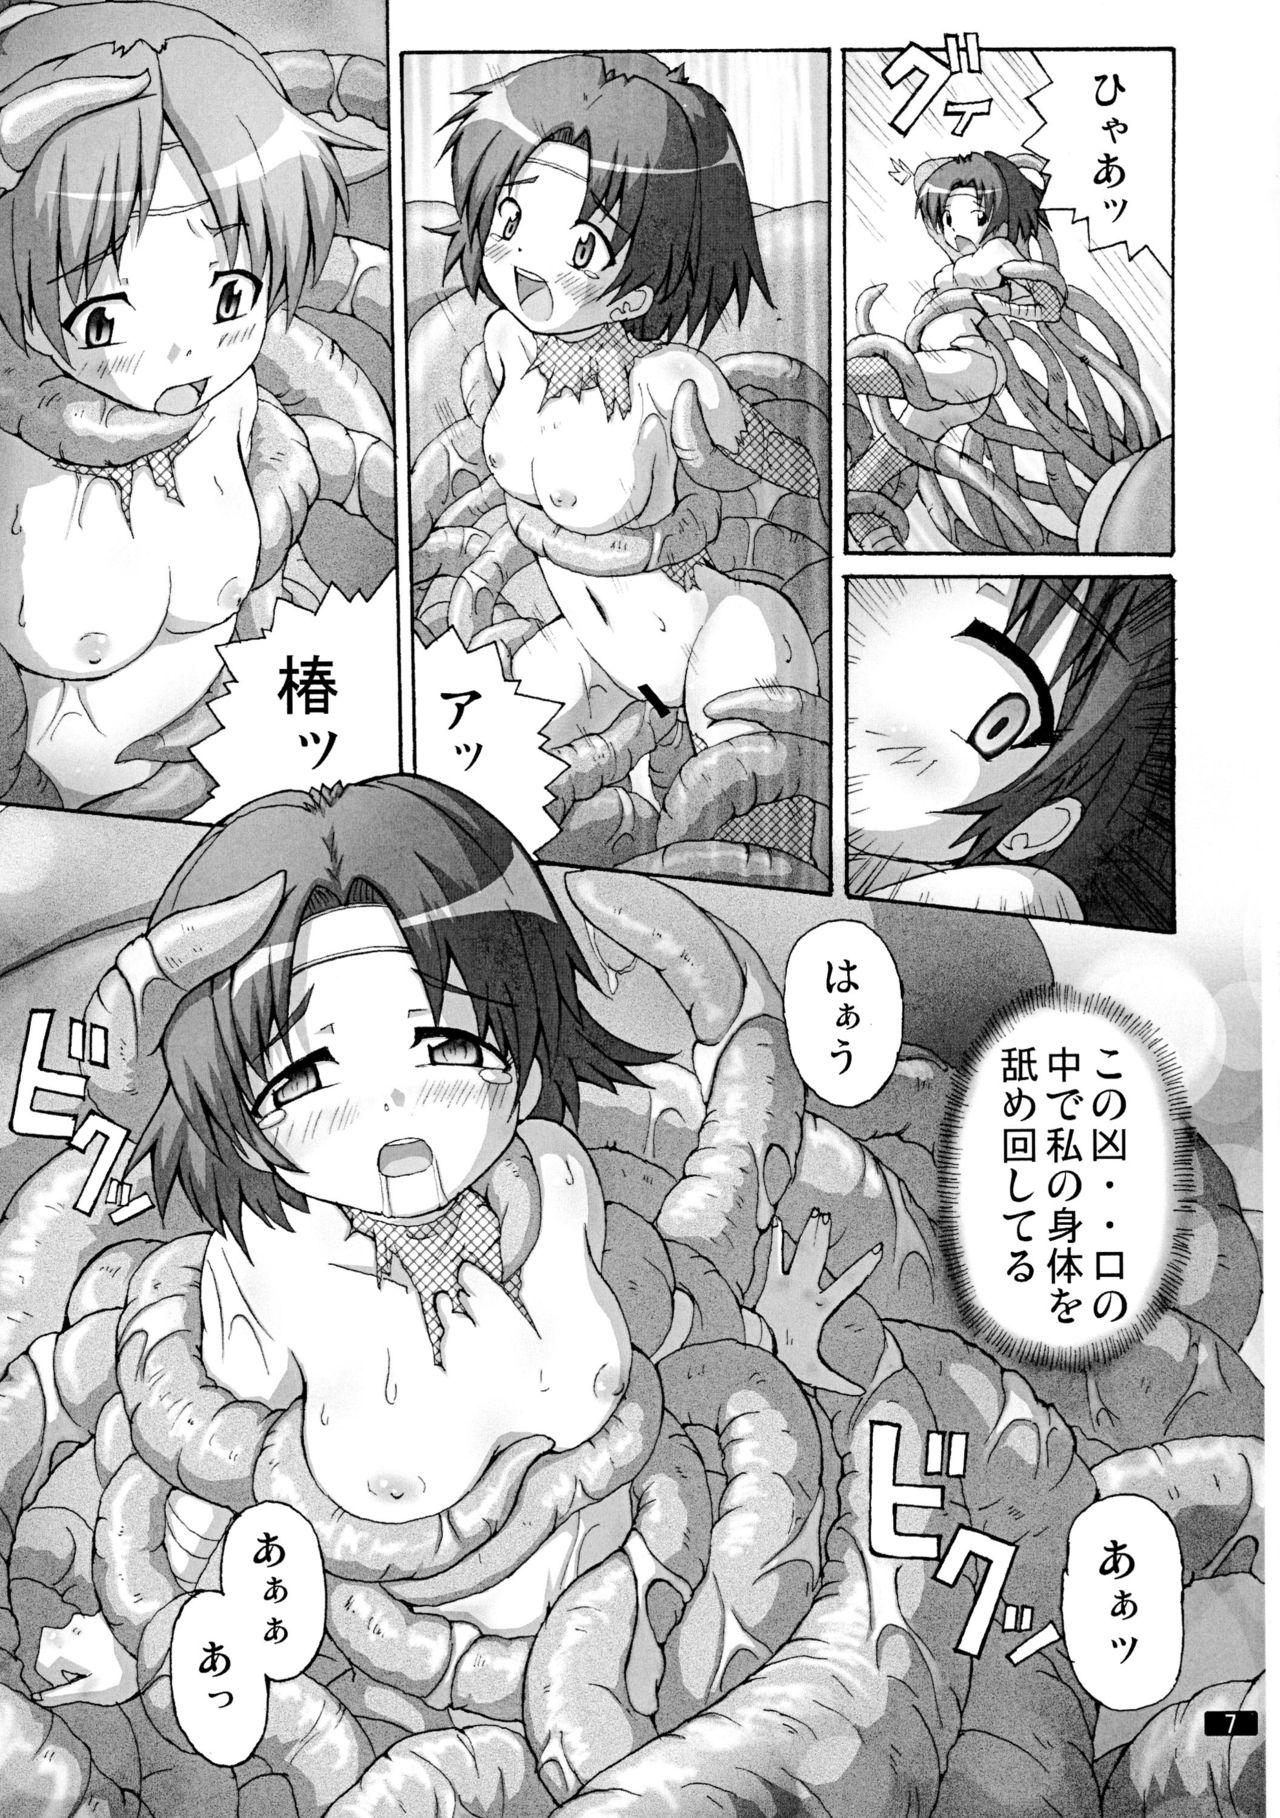 Clitoris Kaiun no Taimashi Nozomi 5 1/ 2 Brunette - Page 7